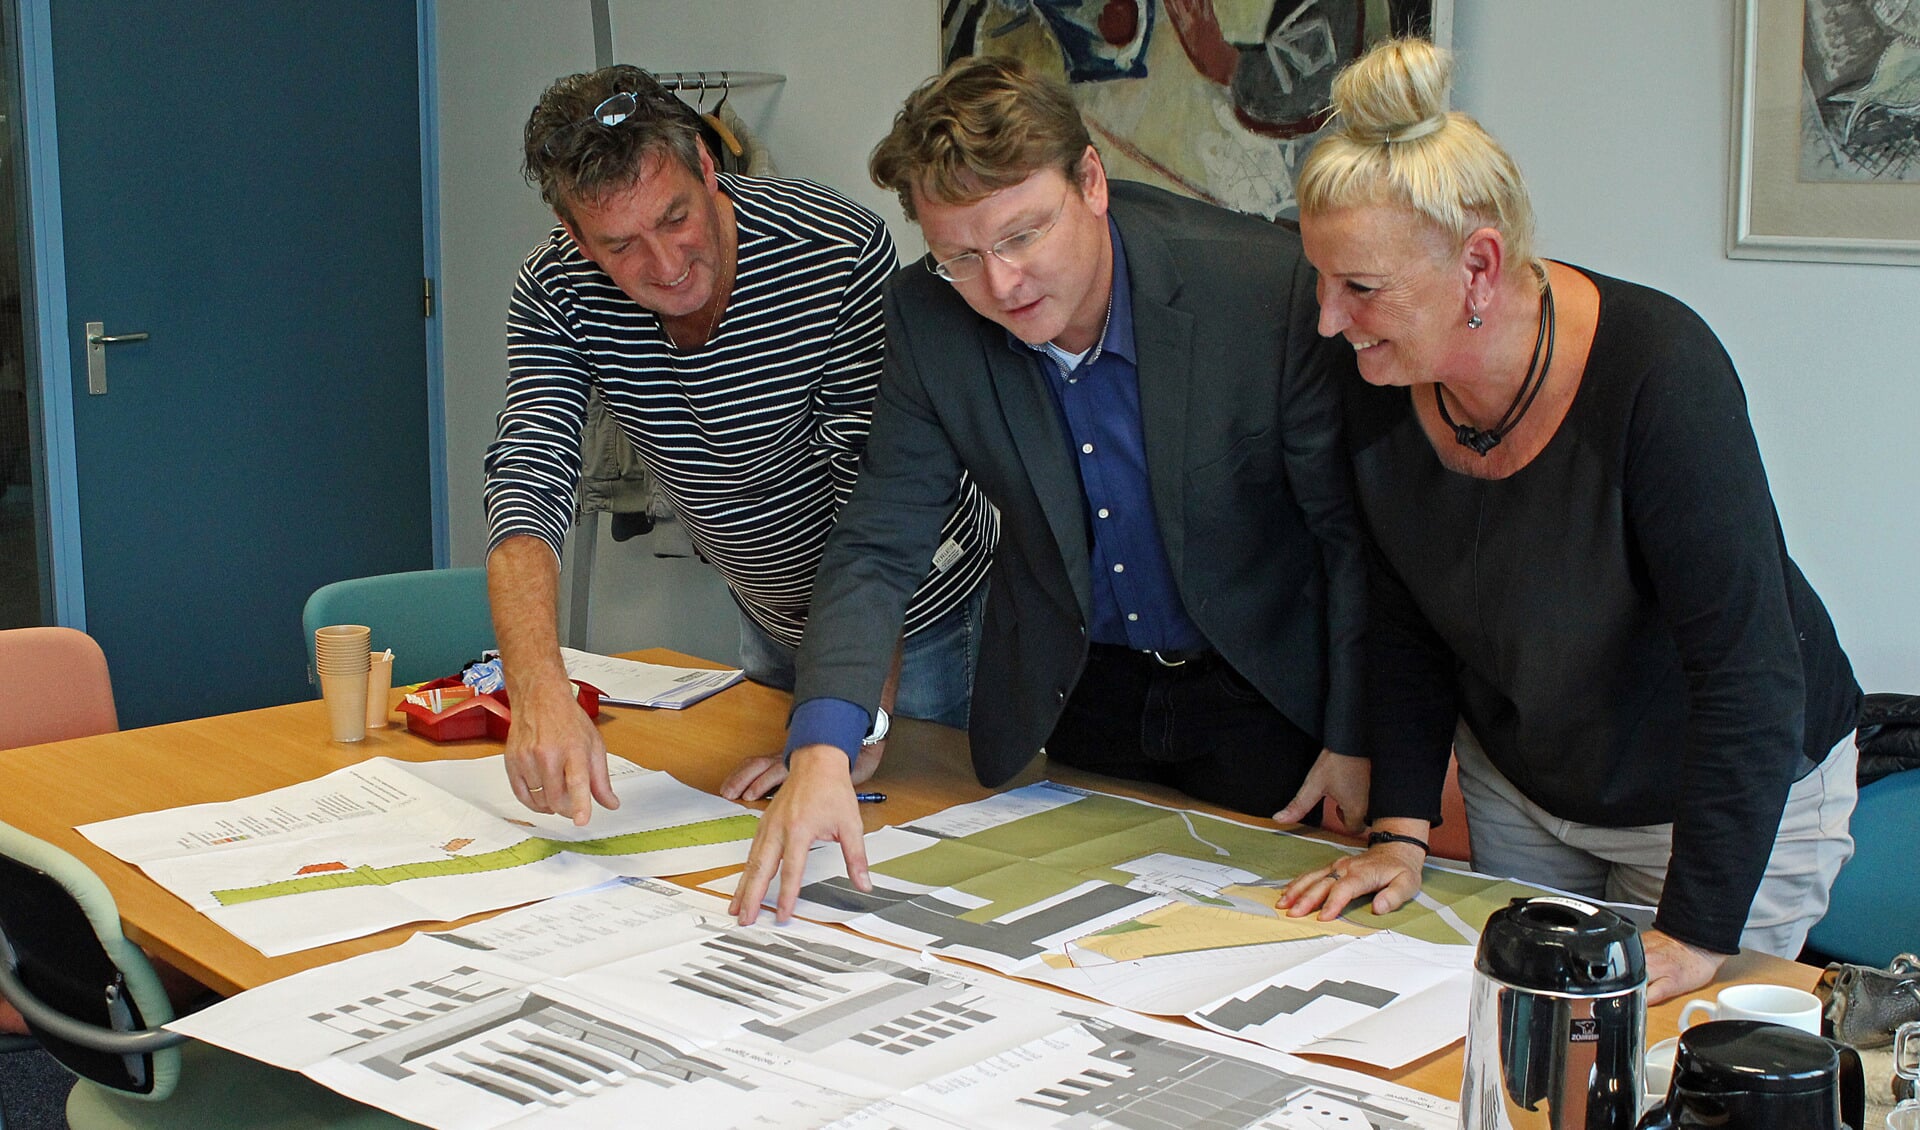 V.l.n.r. : Sjef Kenniphaas, Rob Zeeman (wethouder gemeente Bergen) en Rita Koppedraaijer. Bespreking in oktober over de nieuwbouw.
